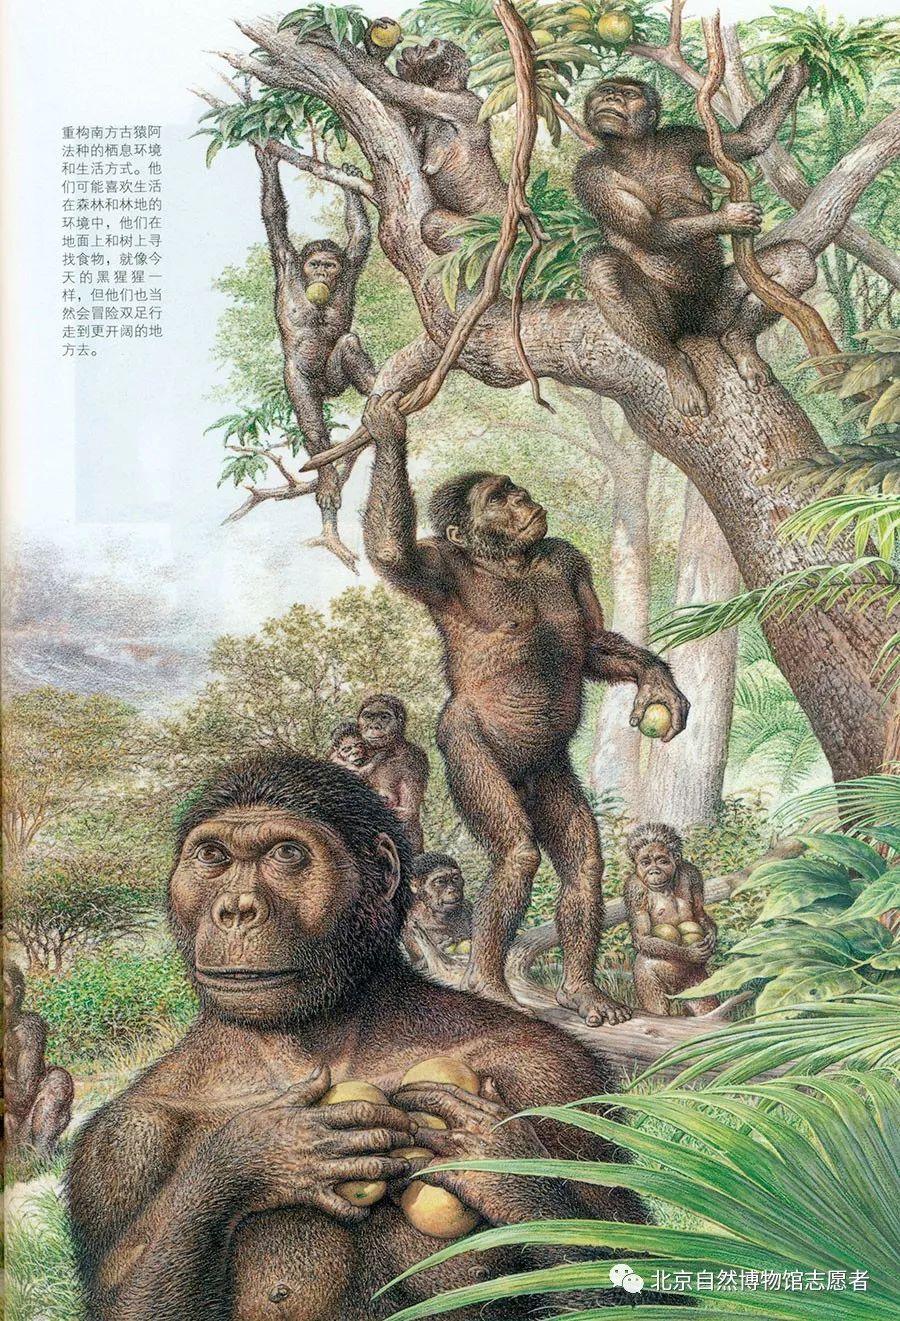 北京猿人是我们的祖先吗?